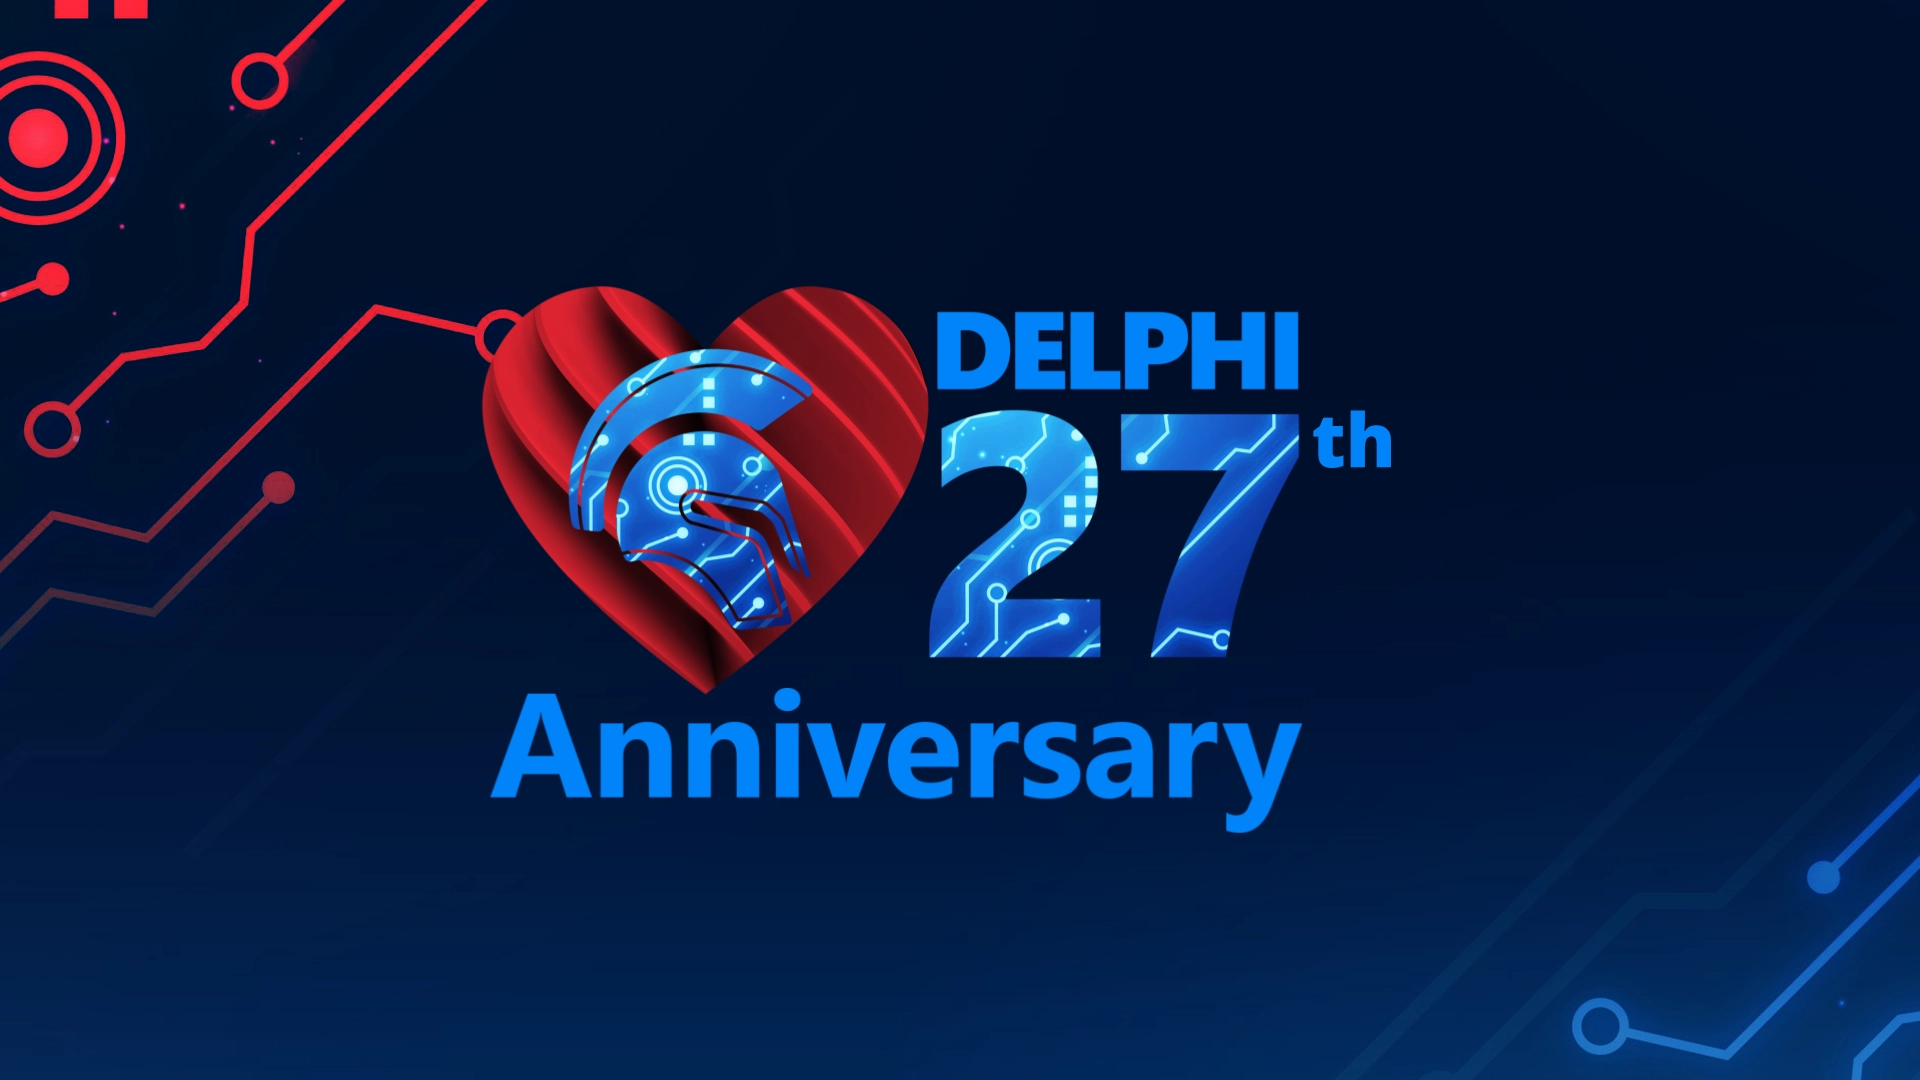 building-the-future-delphi-s-27th-anniversary-delphi27th